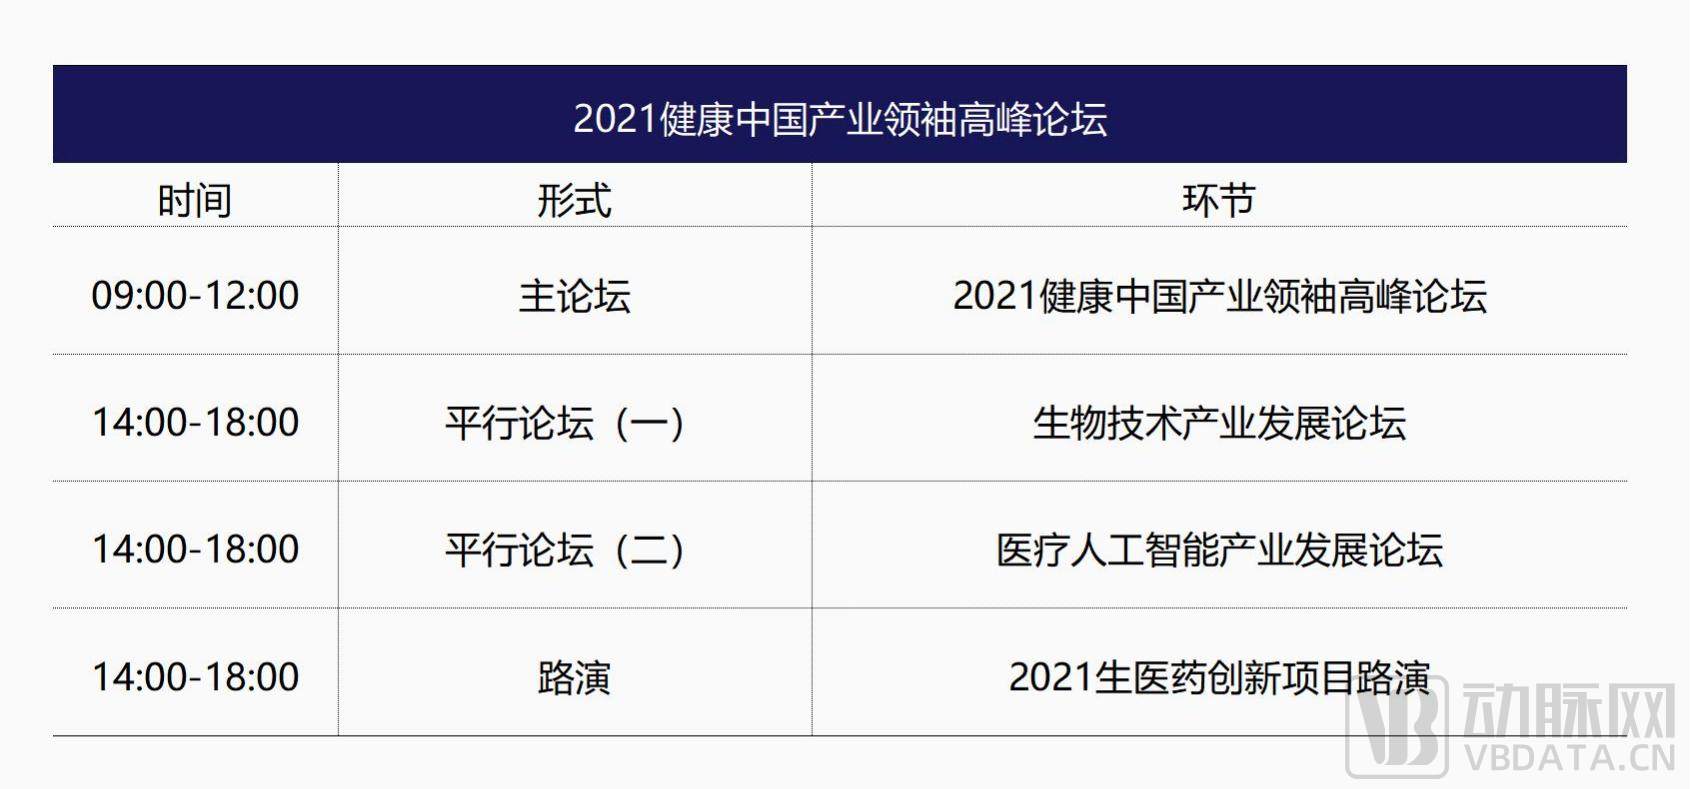 2021健康中国产业领袖高峰论坛   PPT制图_05.jpg